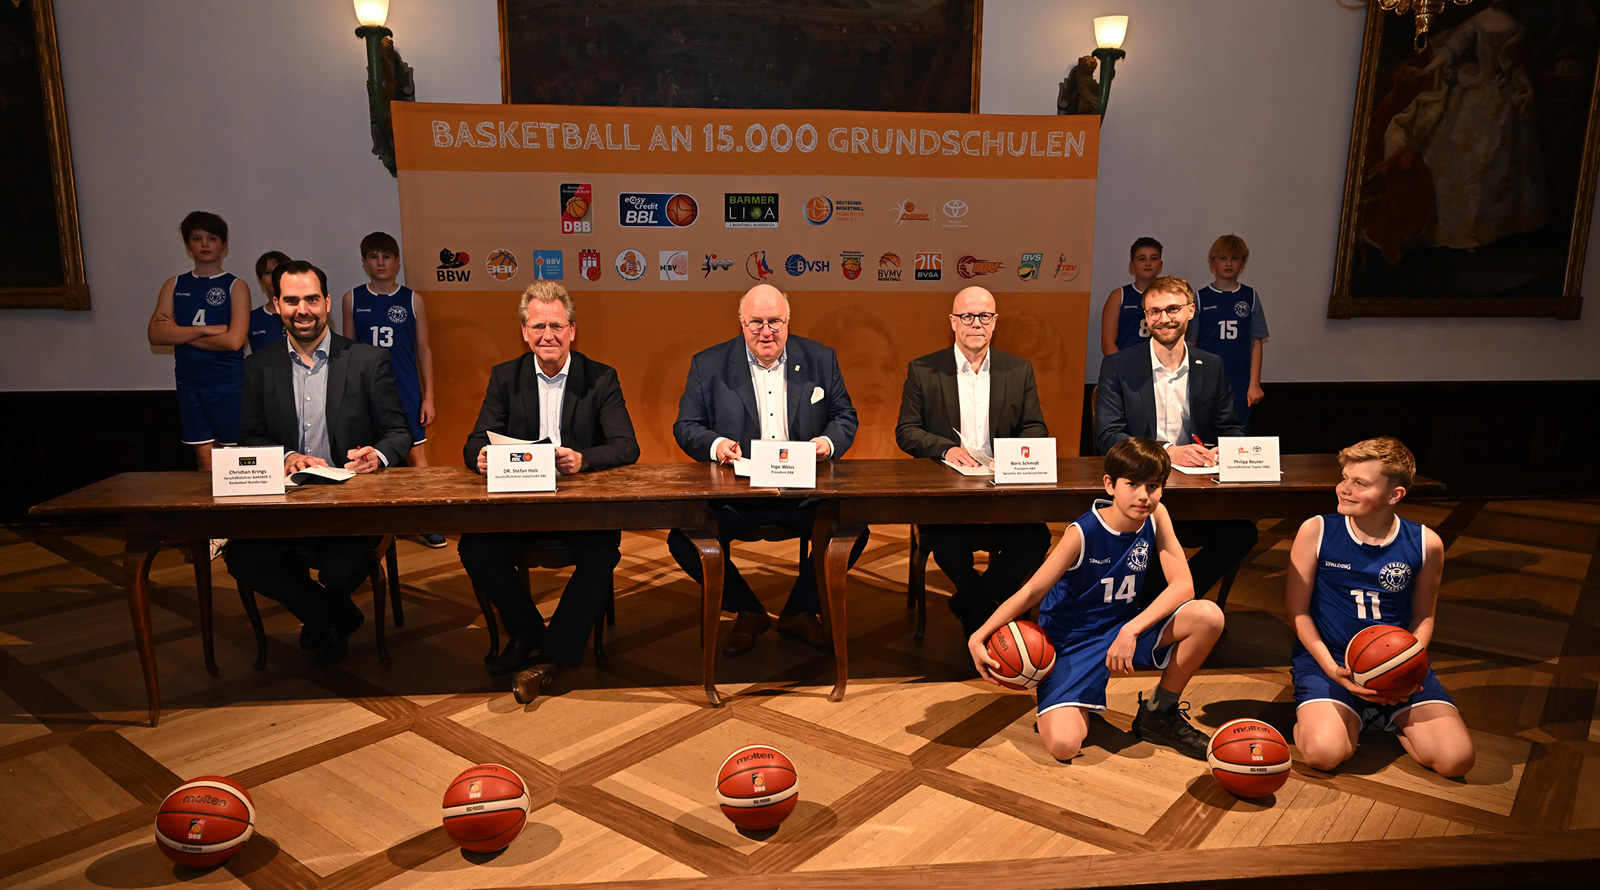 „Freiburger Erklärung“ unterzeichnet zur gemeinsamen Entwicklung des Basketballsports für Kinder im Grundschulalter